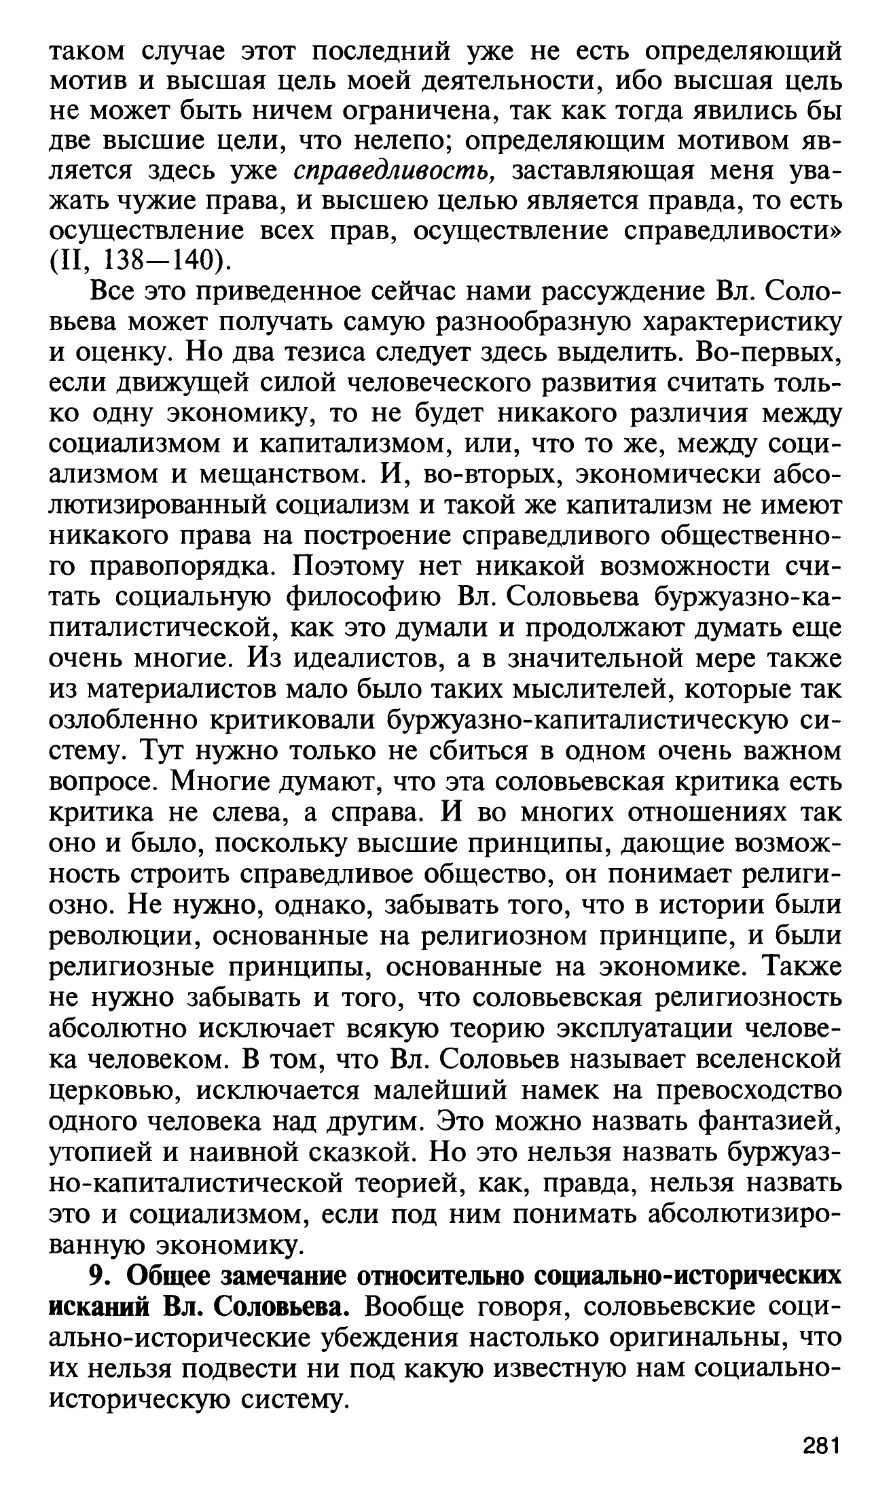 9. Общее замечание относительно социально-исторических исканий Вл. Соловьева